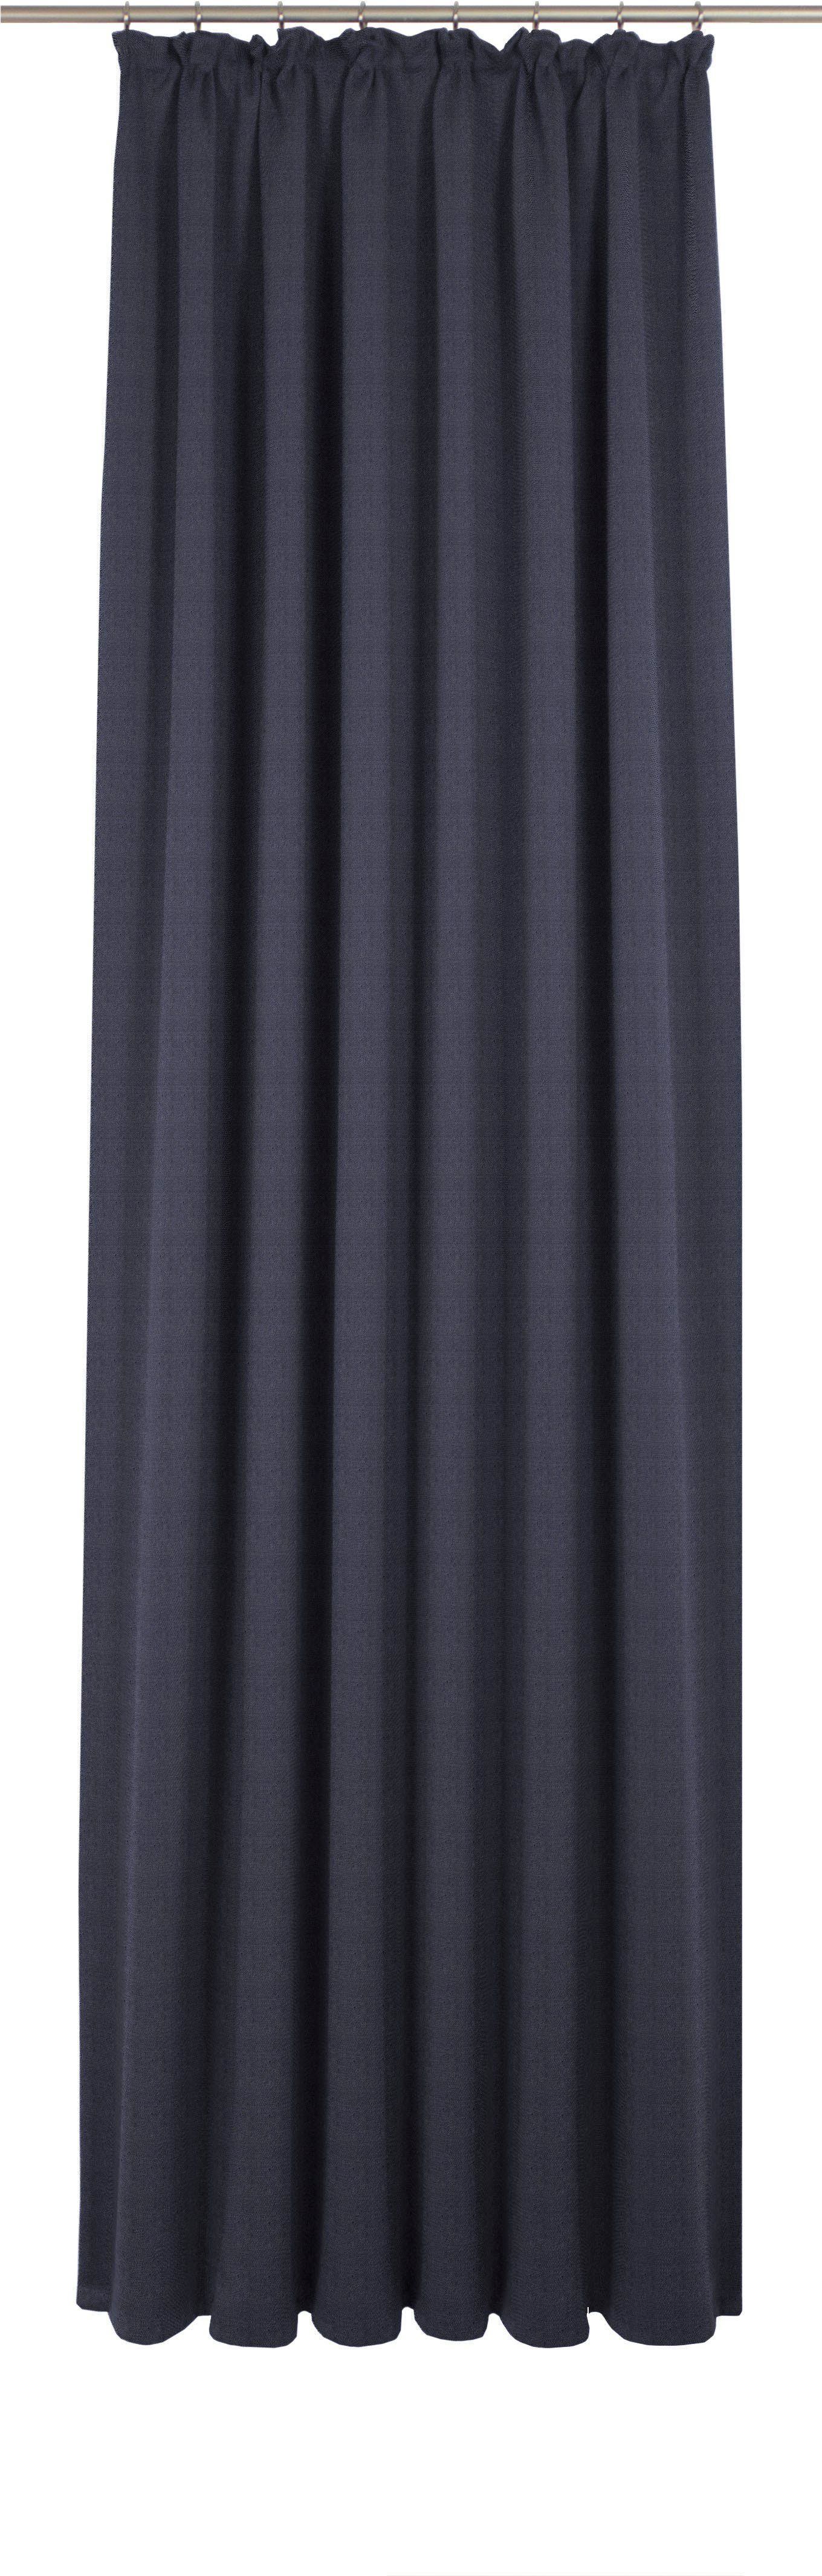 Vorhang Uni Collection, Wirth, Kräuselband (1 St), blickdicht, nach Maß dunkelblau